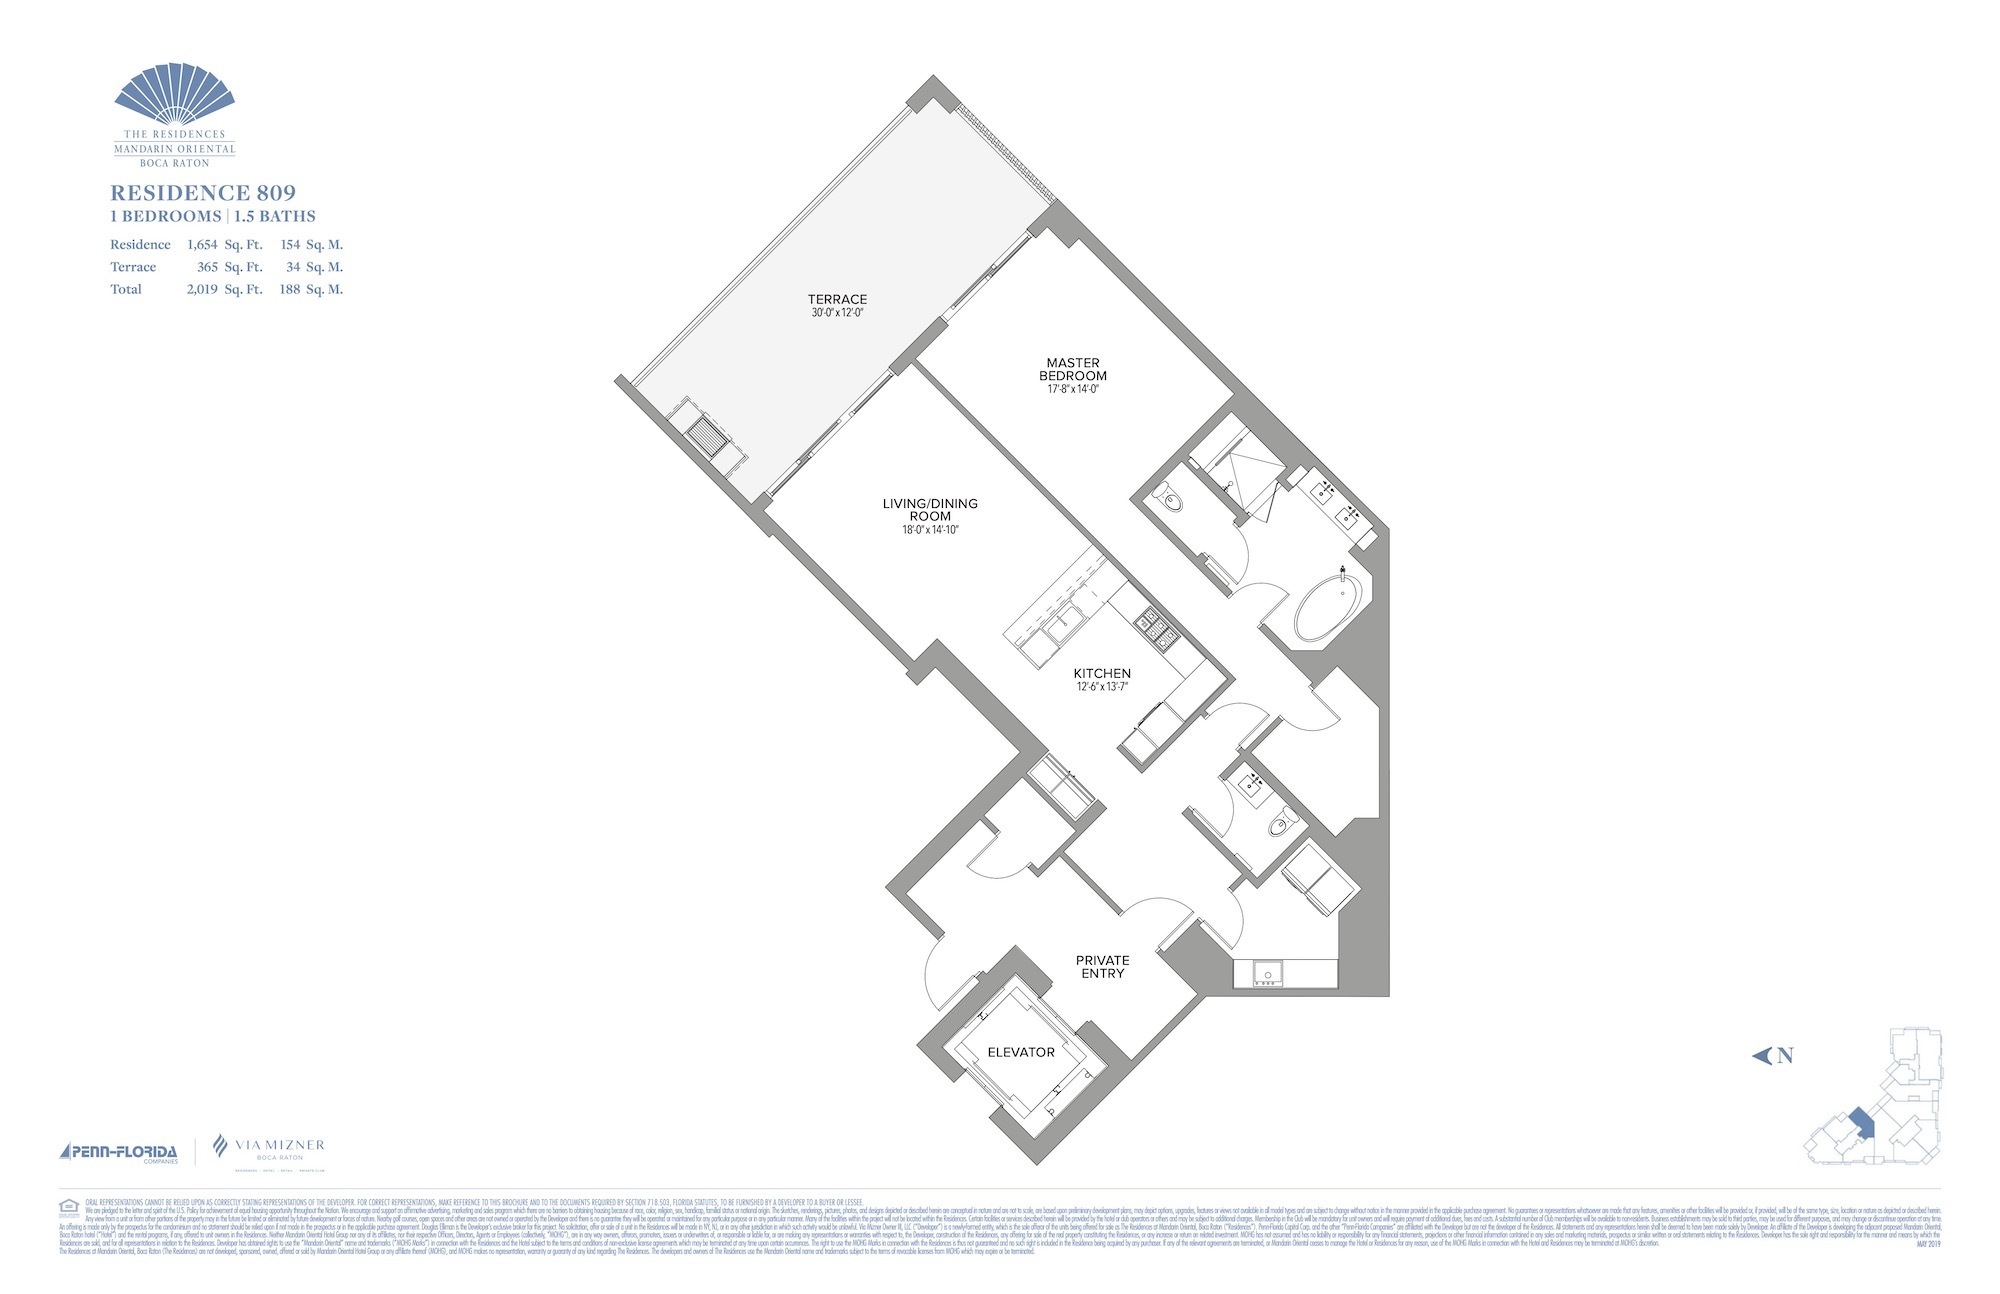 Floor Plan for Residence at Mandarin Oriental Floorplans, Residence 809